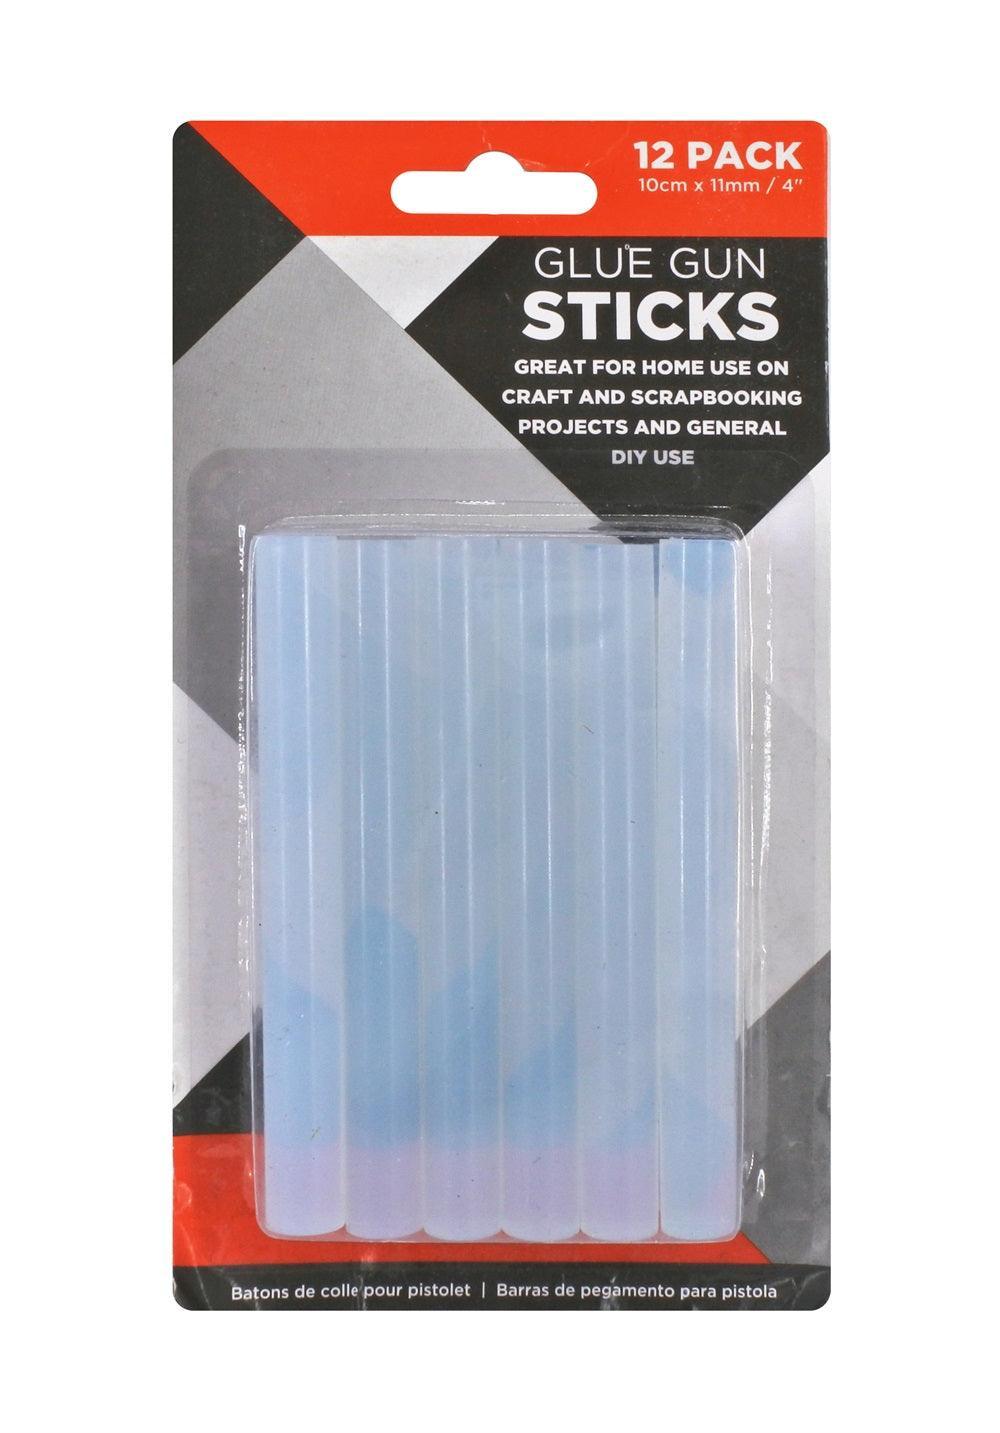 Glue Gun Sticks | 10cm x 11mm | 12 Pack - Choice Stores